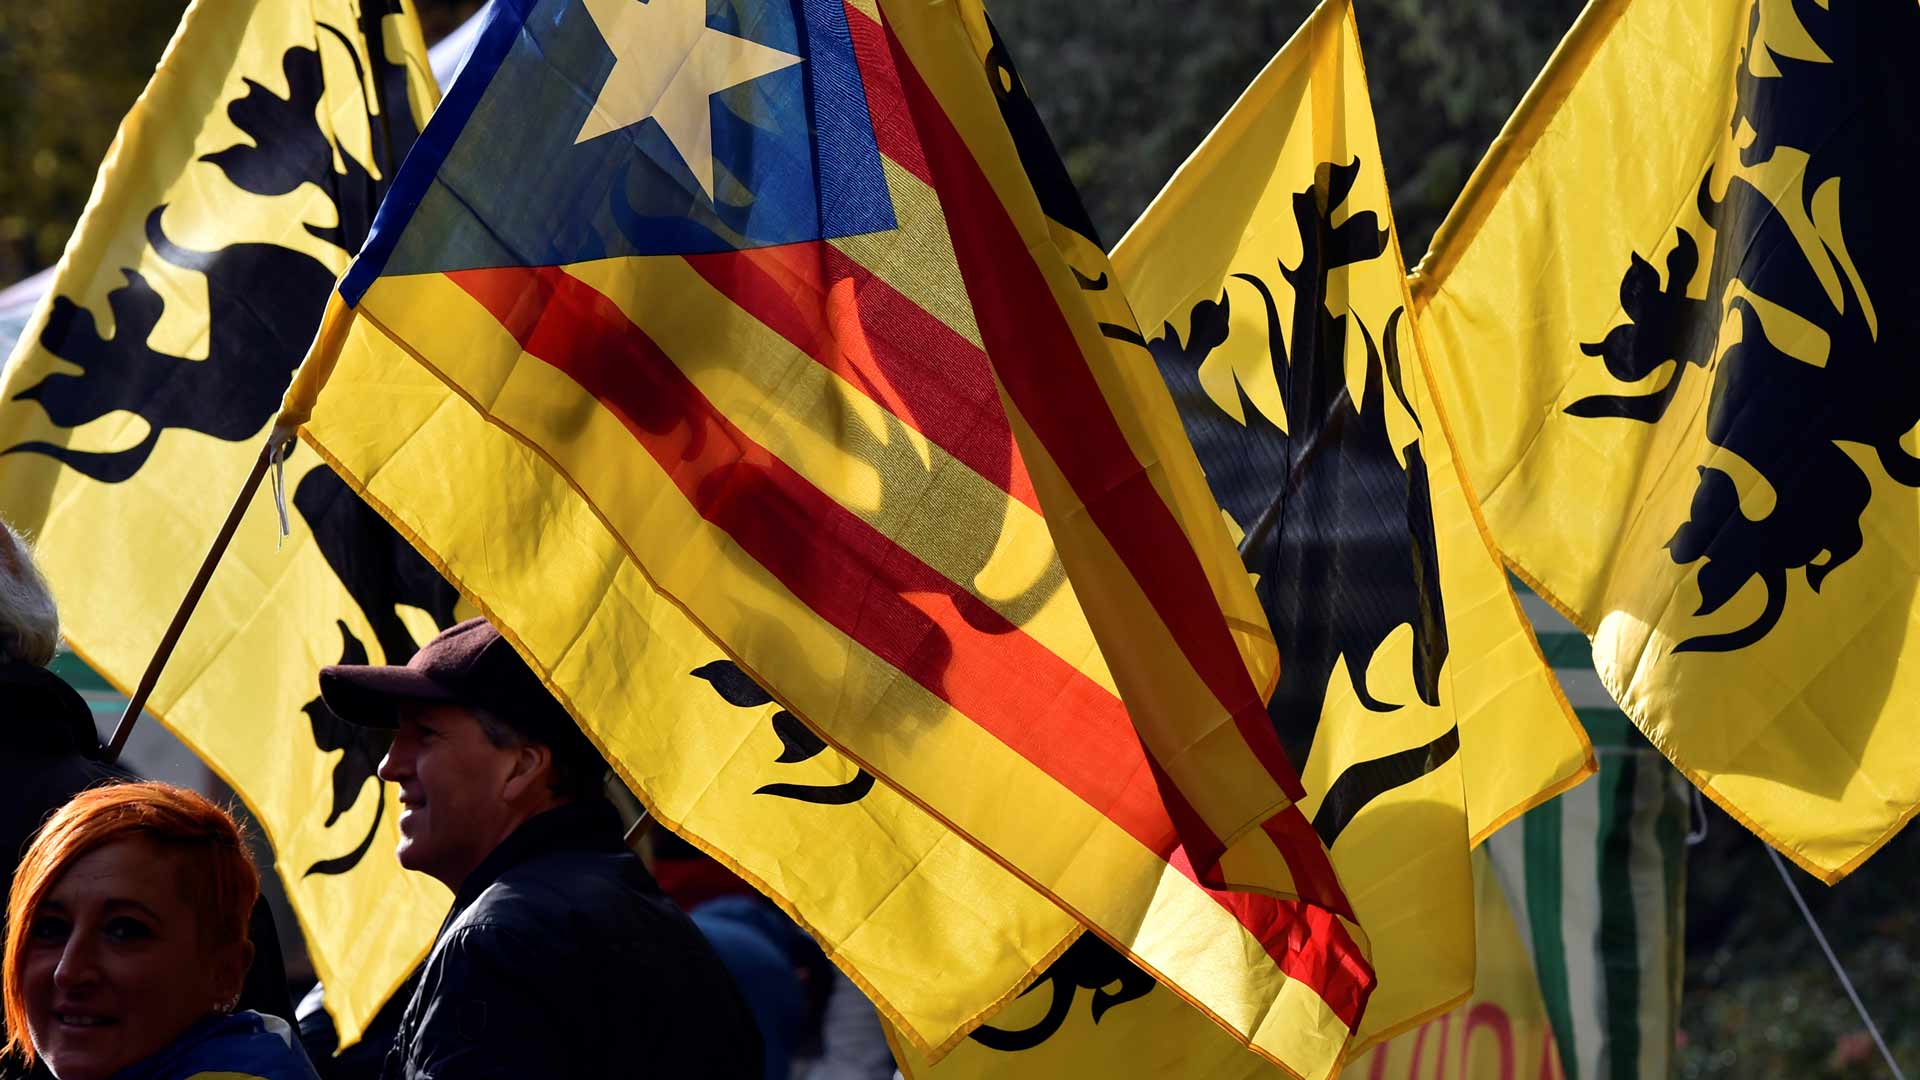 Bruselas se convierte en el centro de la precampaña electoral catalana